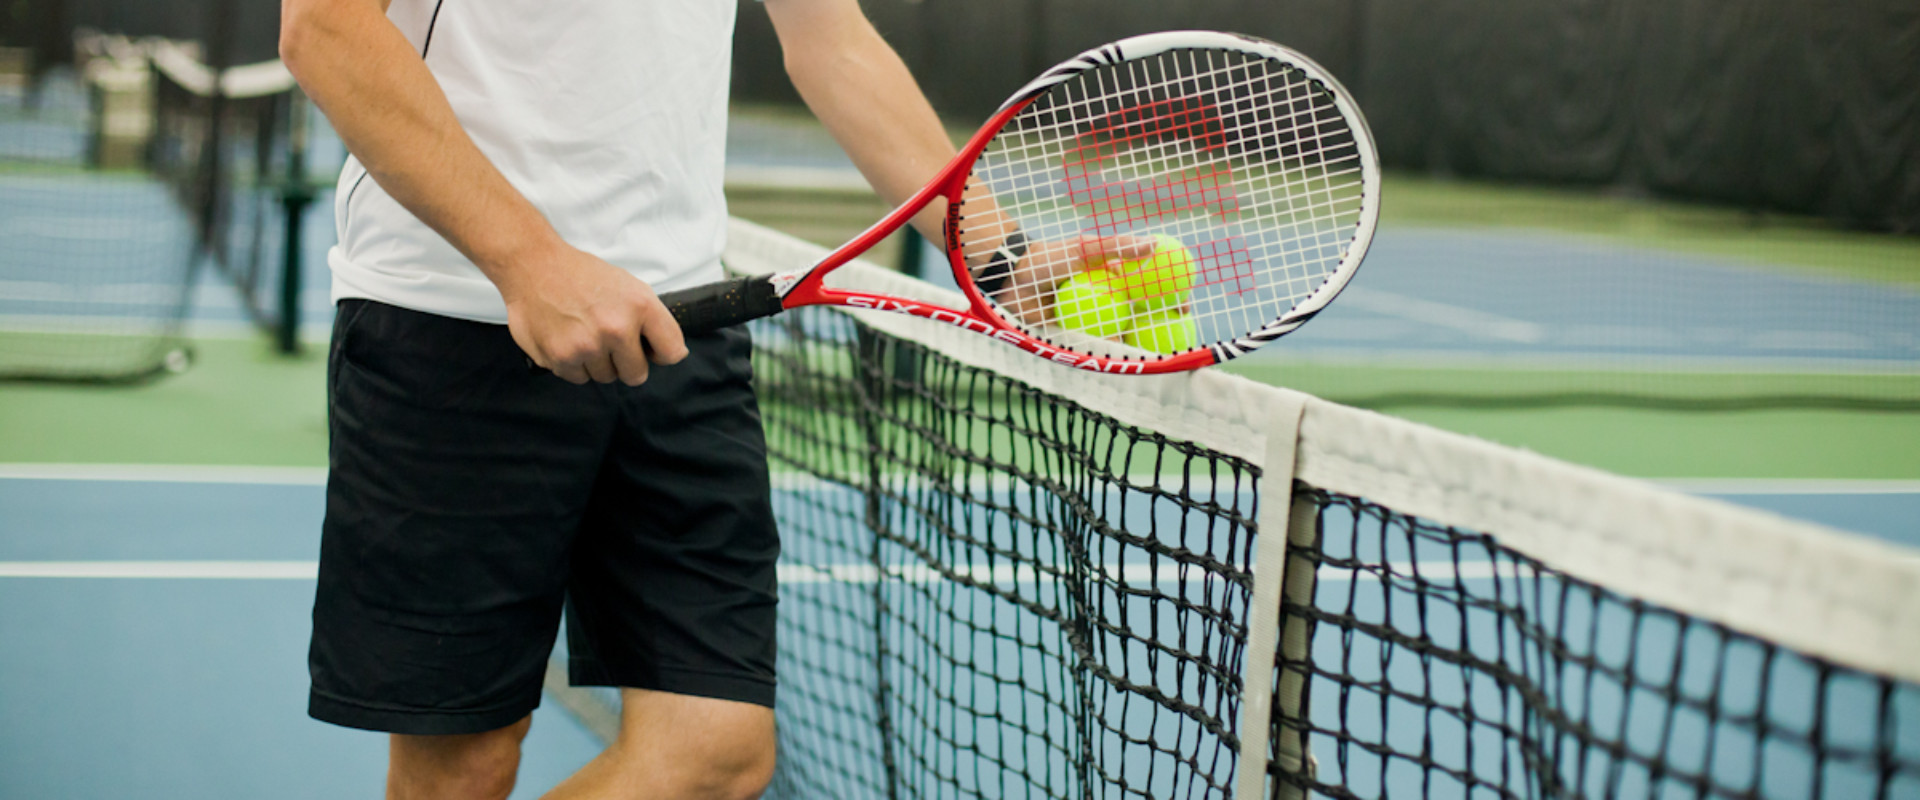 Теннис сетка игры. Большой теннис. Теннисная ракетка для большого тенниса.